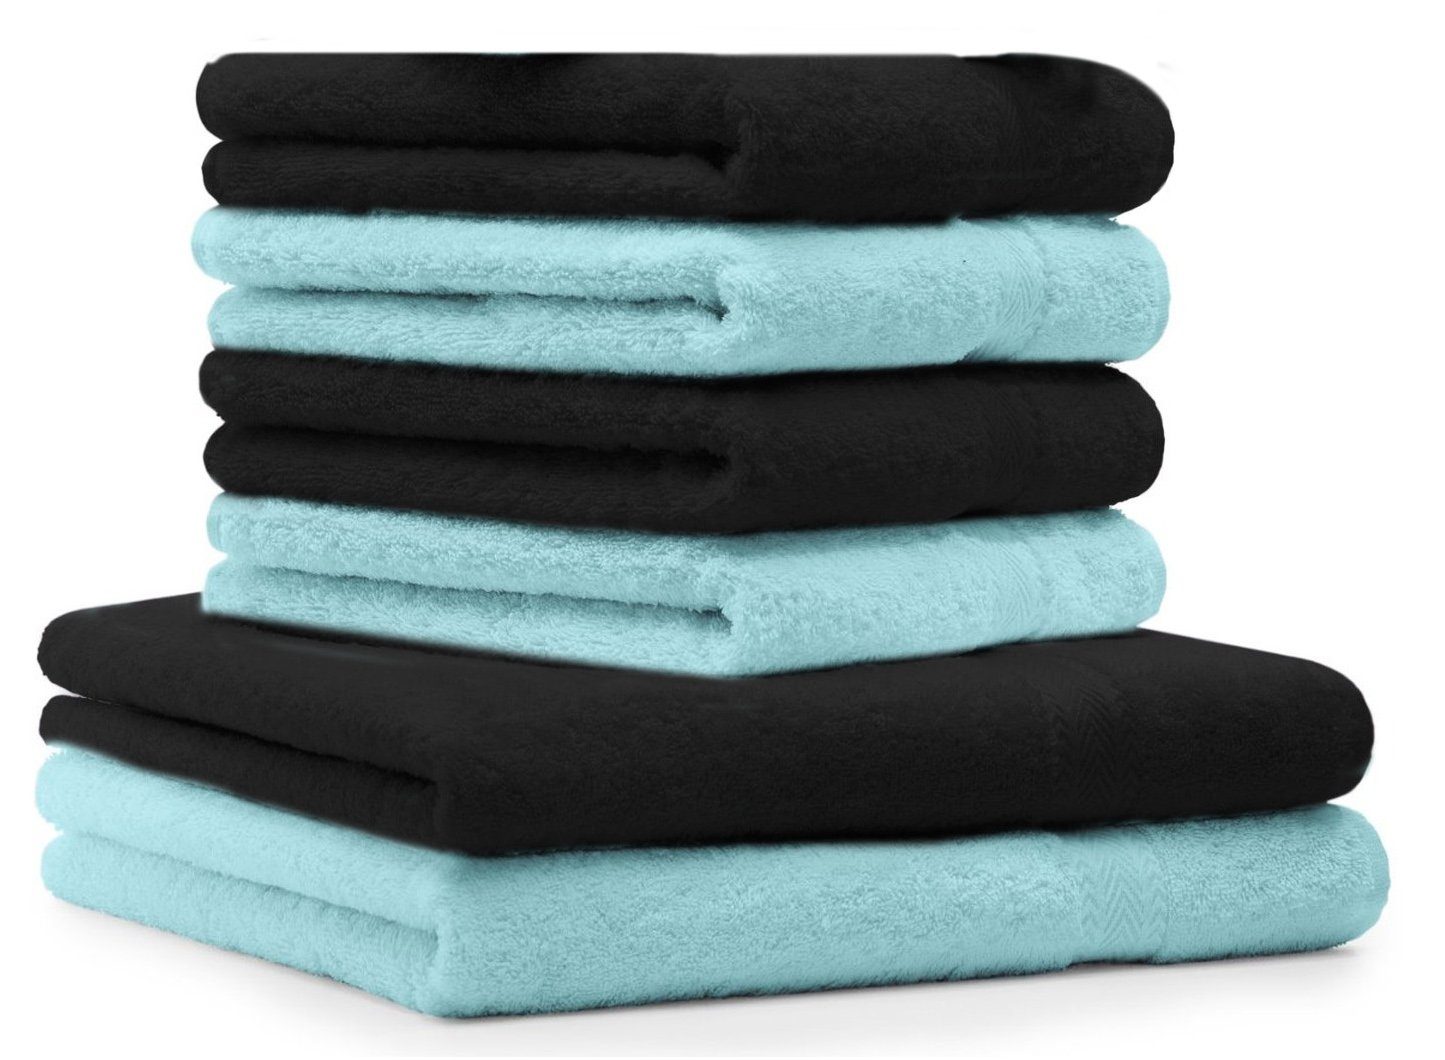 Betz Handtuch Set 6 TLG. Handtuch-Set Premium 100% Baumwolle 2 Duschtücher 4 Handtücher Farbe schwarz und türkis, 100% Baumwolle | Handtuch-Sets